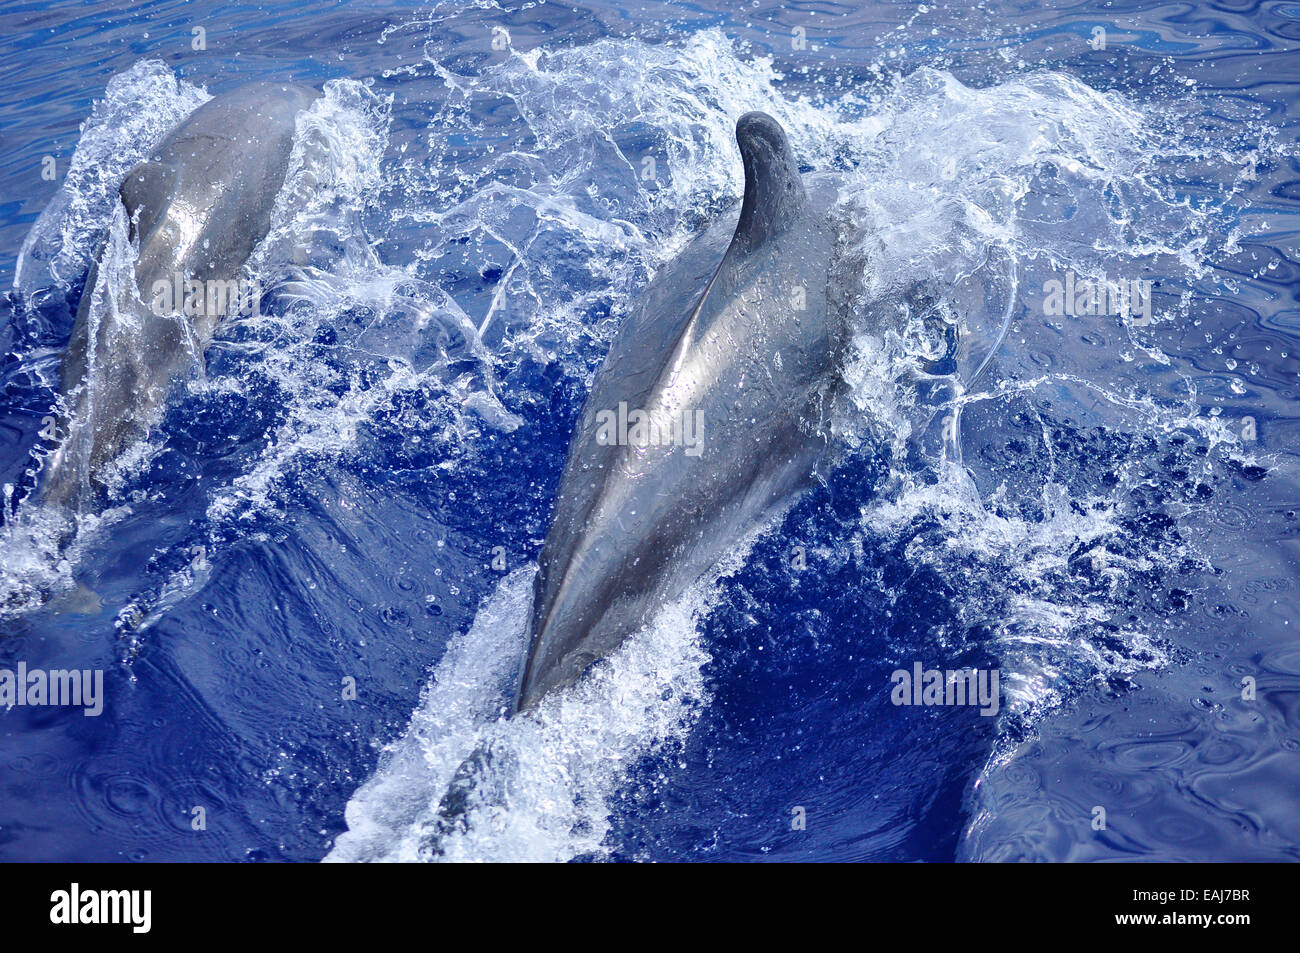 Madre y juveniles de delfines mulares ( Tursiops truncatus ) salen a la superficie para respirar. Foto de stock